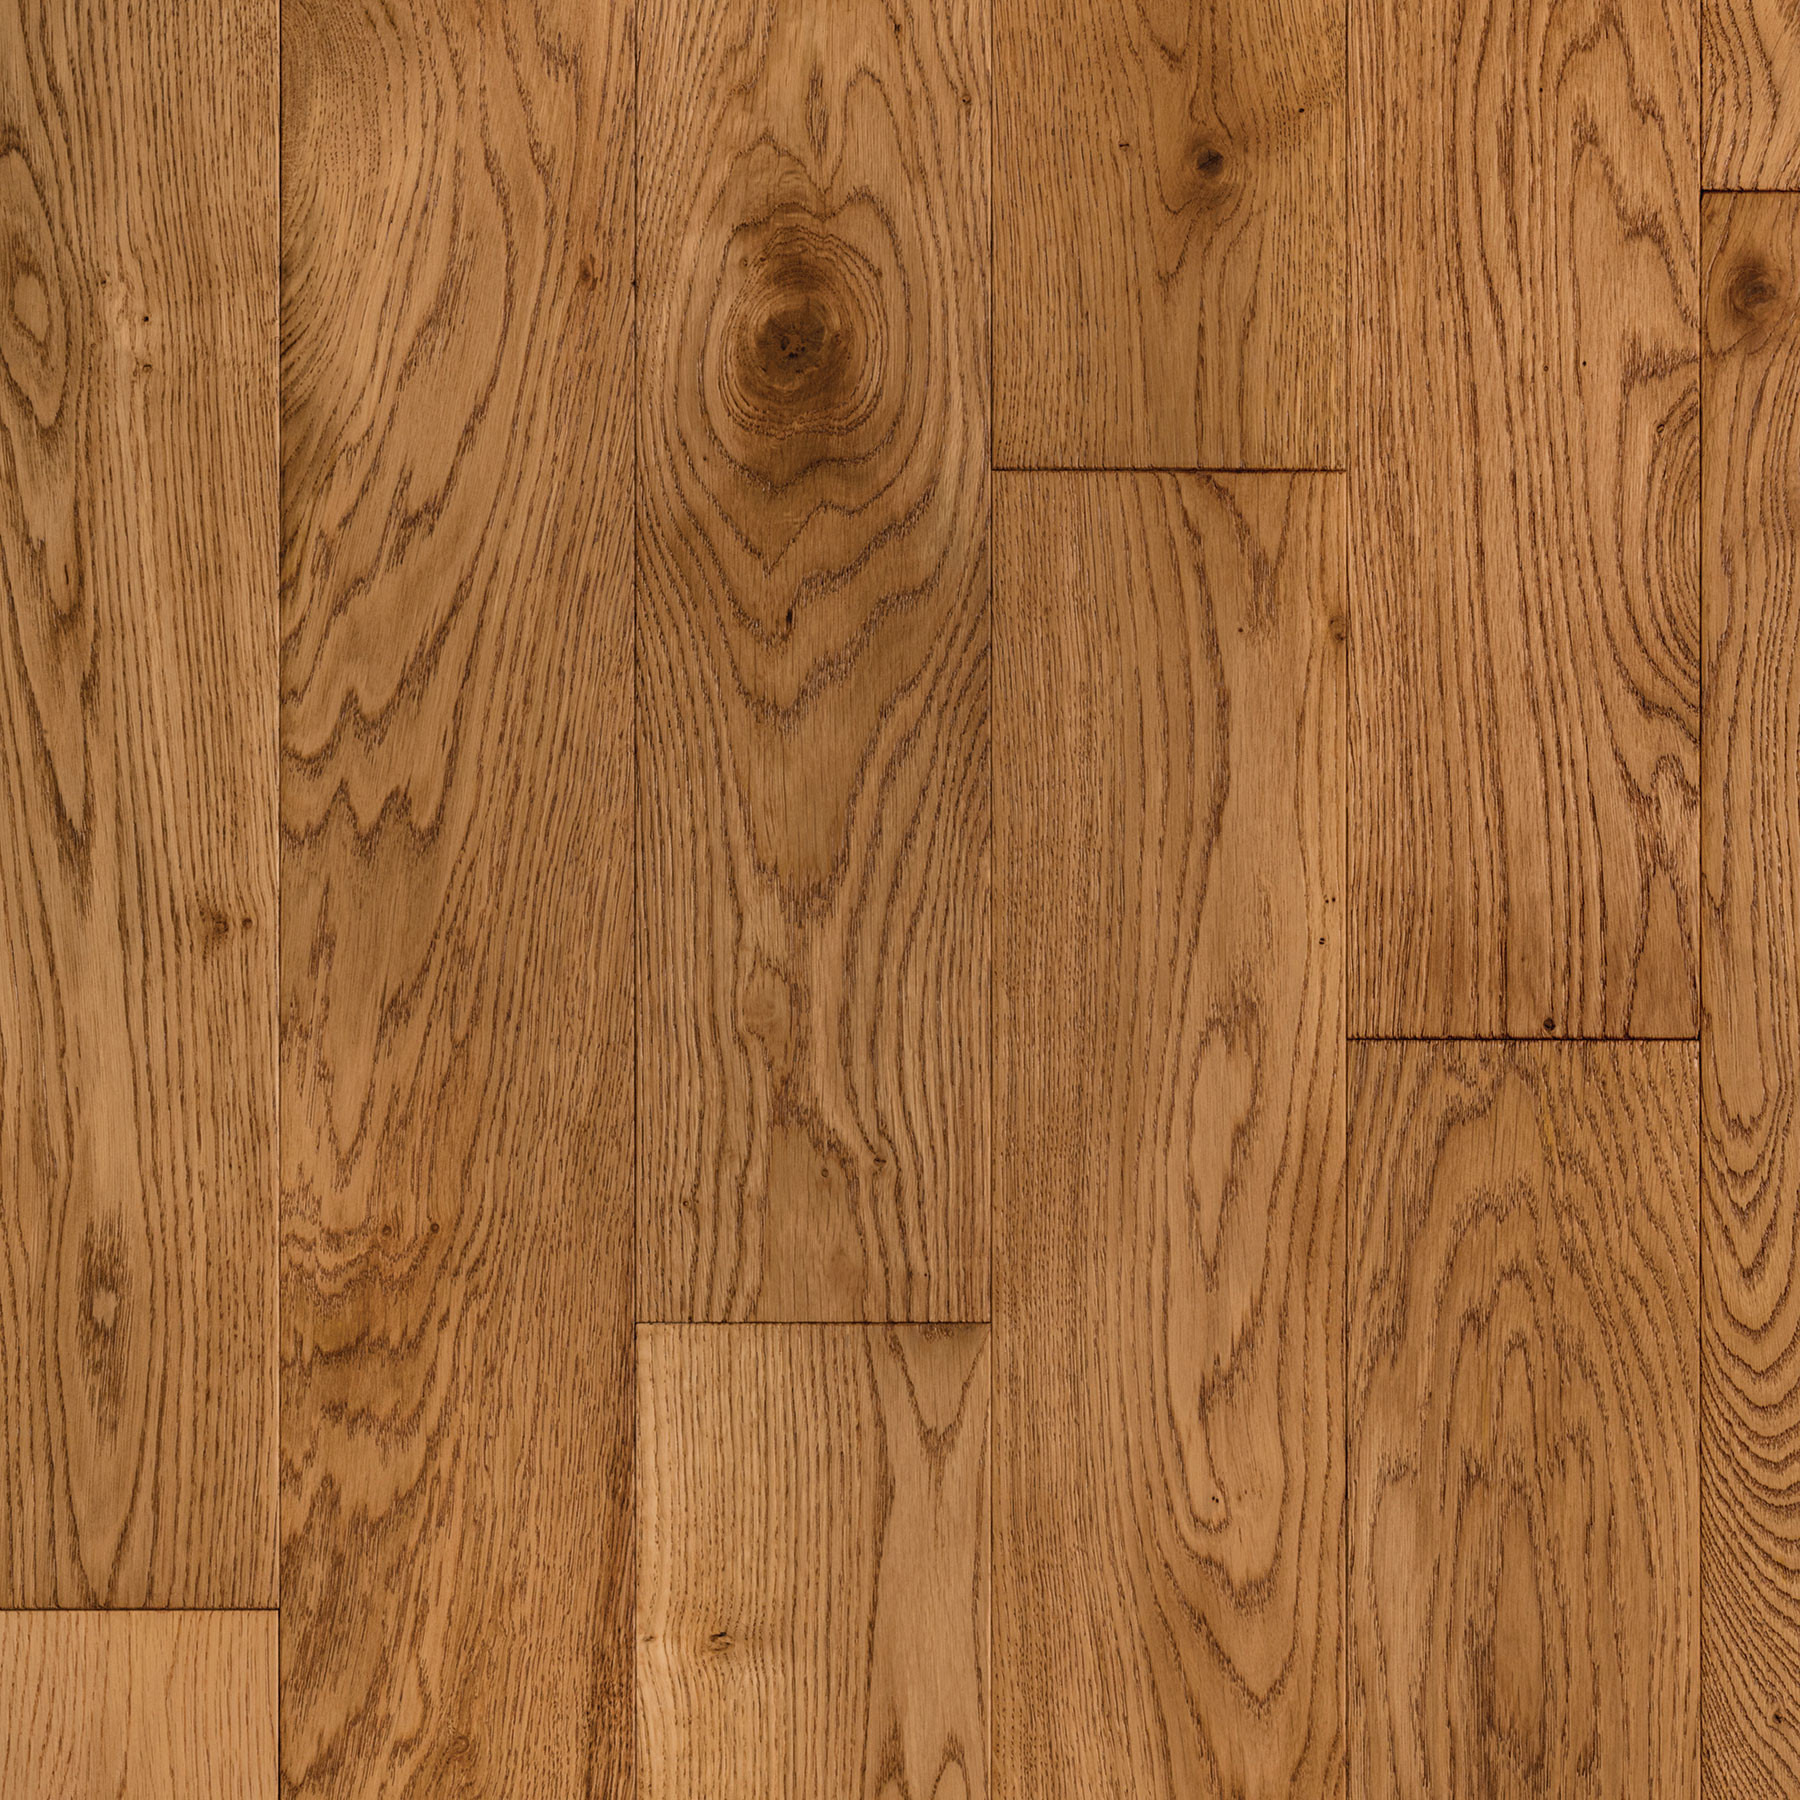 12 Amazing White Oak Plank Hardwood Flooring 2024 free download white oak plank hardwood flooring of harbor oak 5e280b3 white oak sand etx surfaces with regard to harbor oak 5e280b3 white oak sand